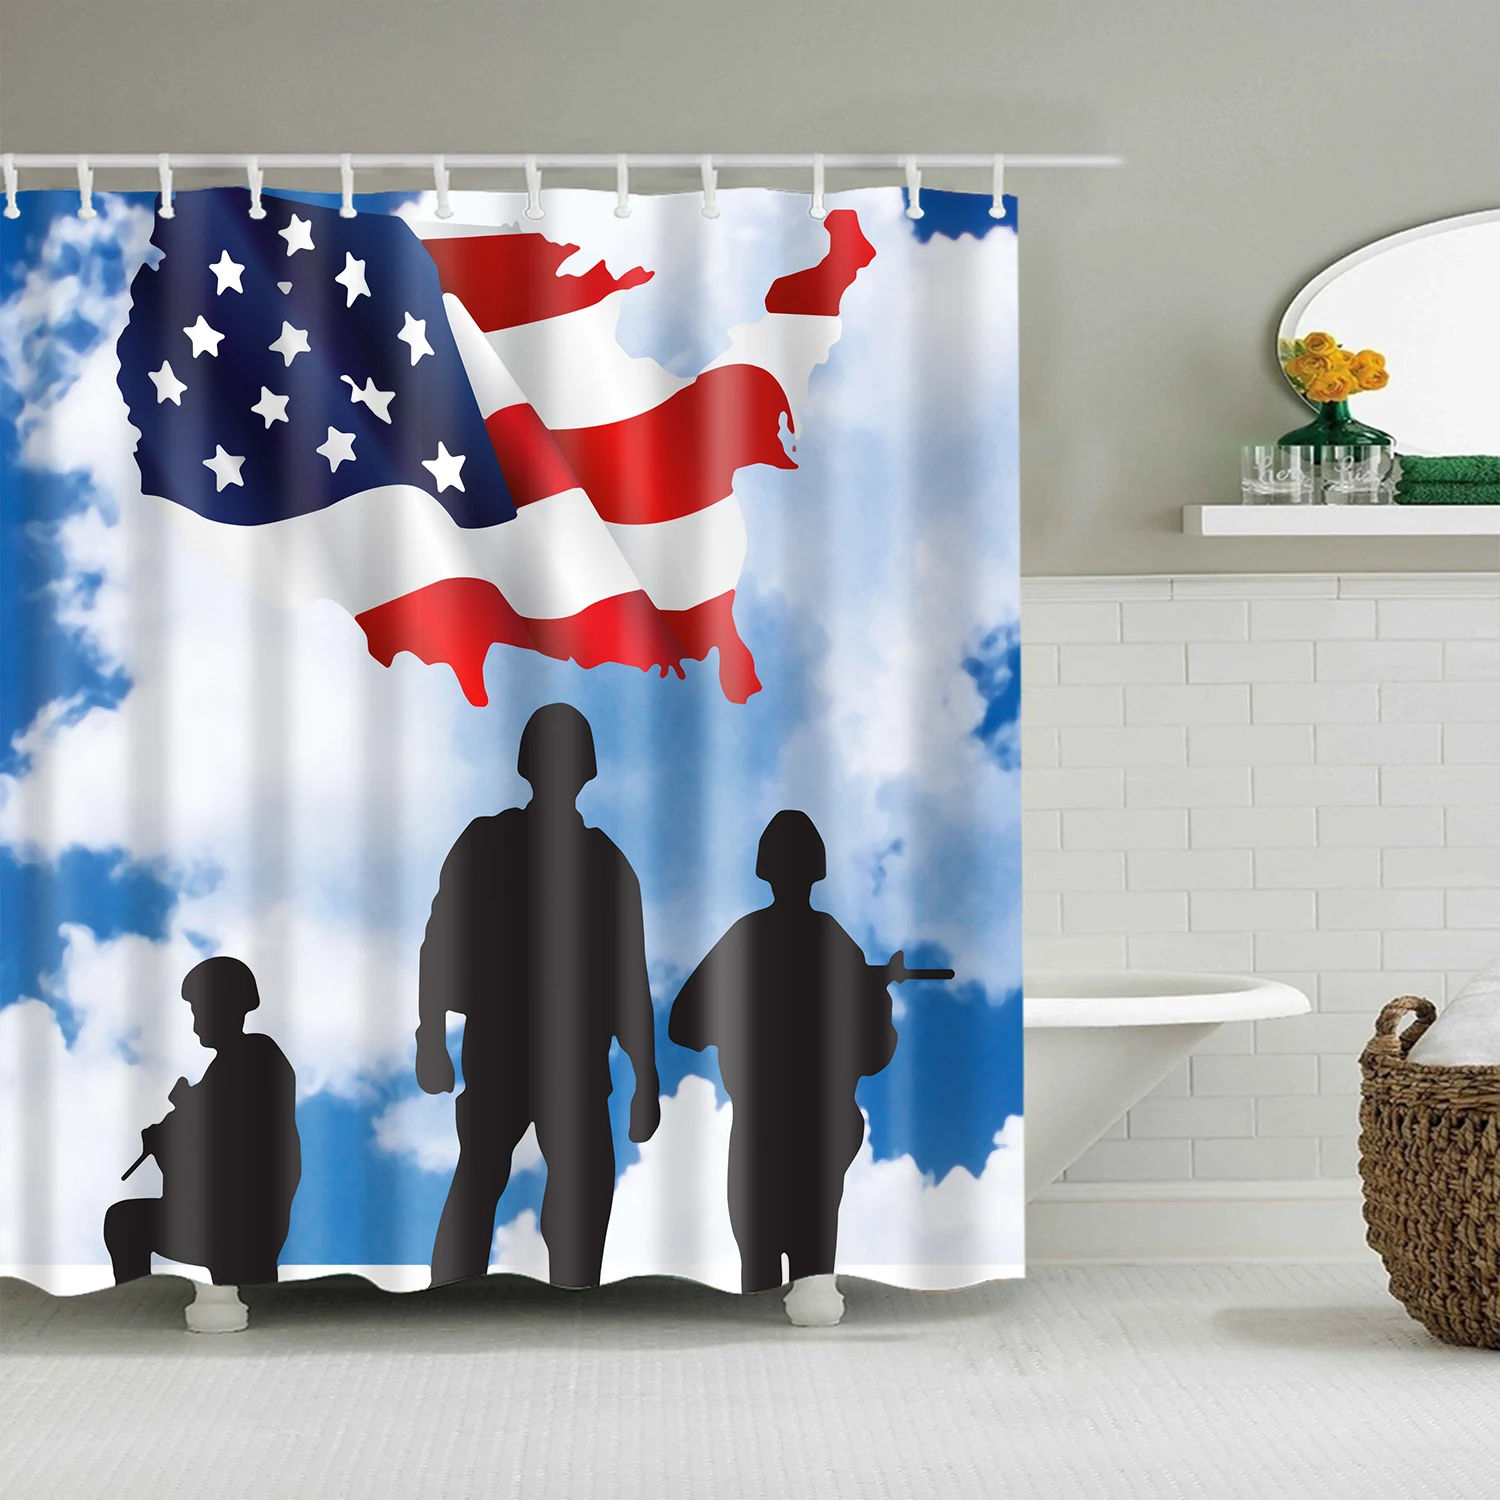 Буквы американский флаг, британский флаг занавеска для душа s ванная комната занавеска Frabic Водонепроницаемый полиэстер занавеска для